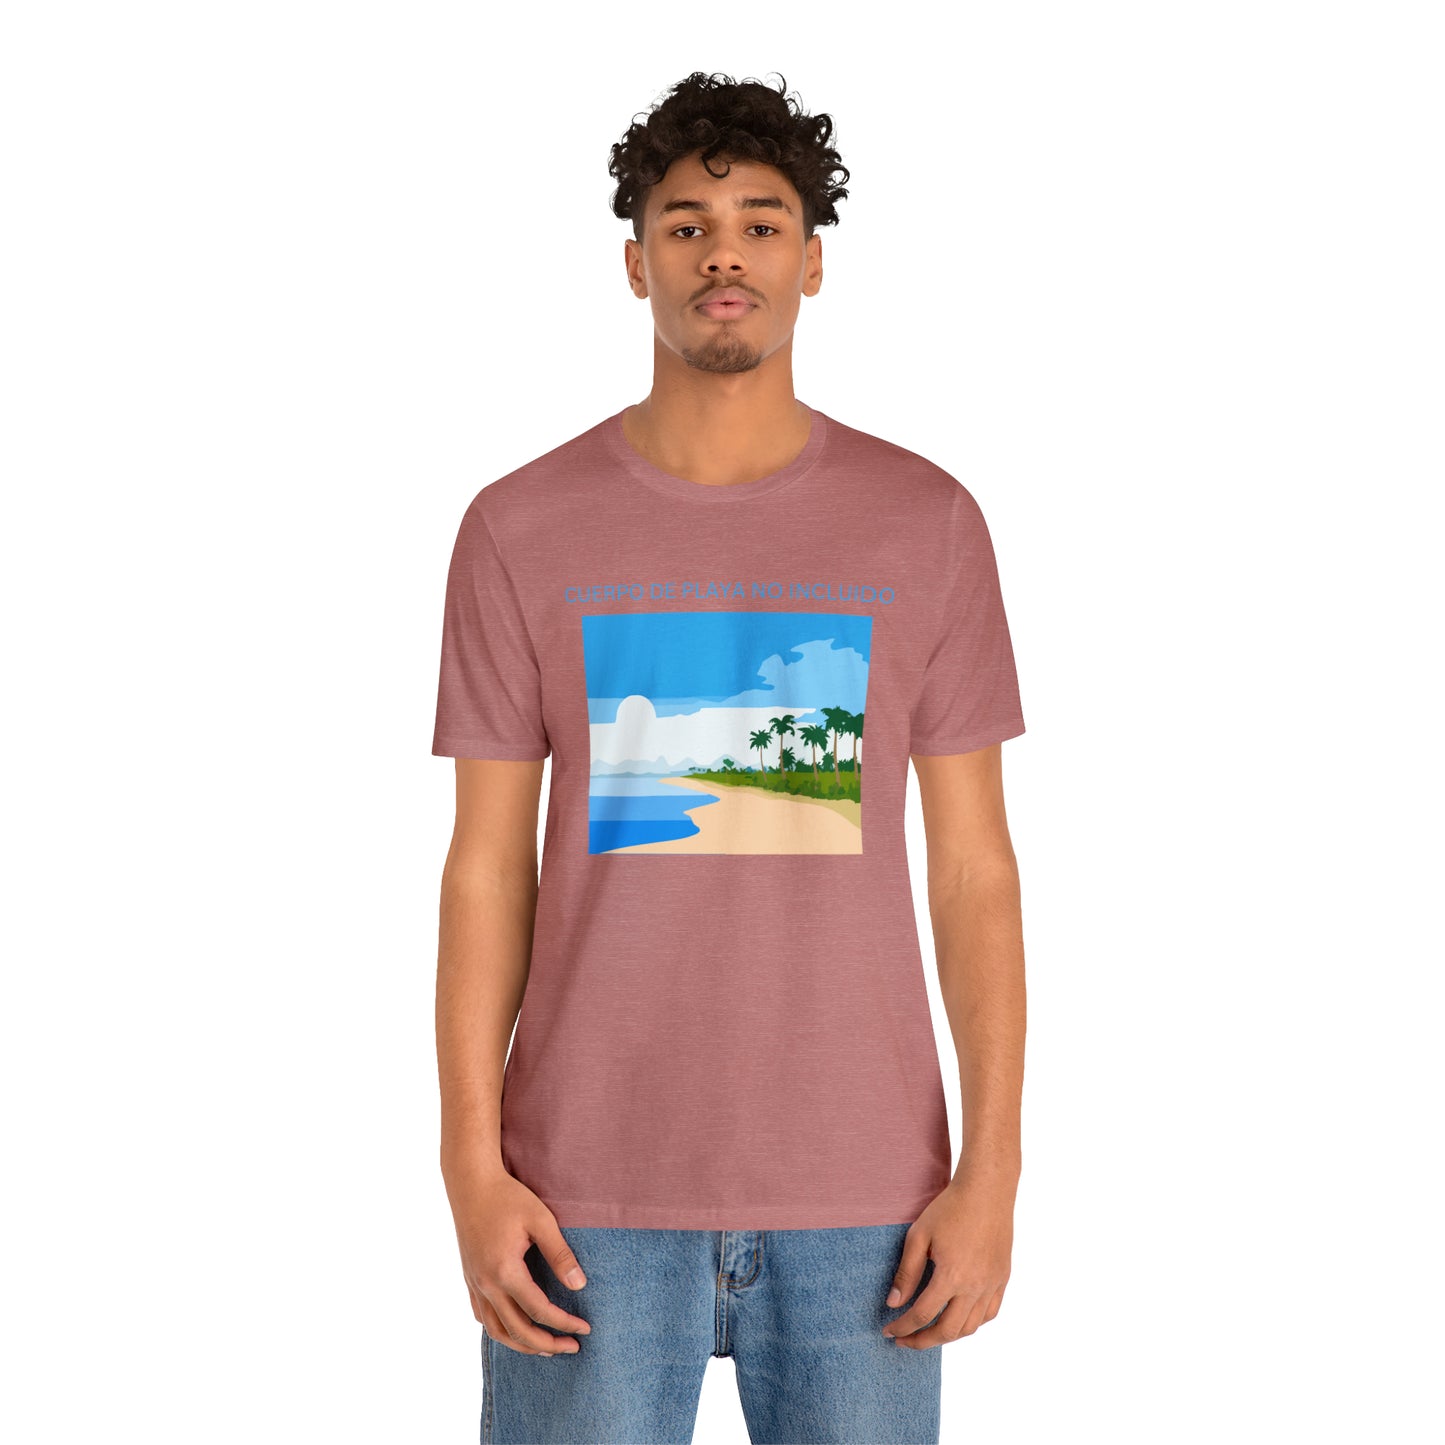 Cuerpo De Playa No Incluido, Shirt